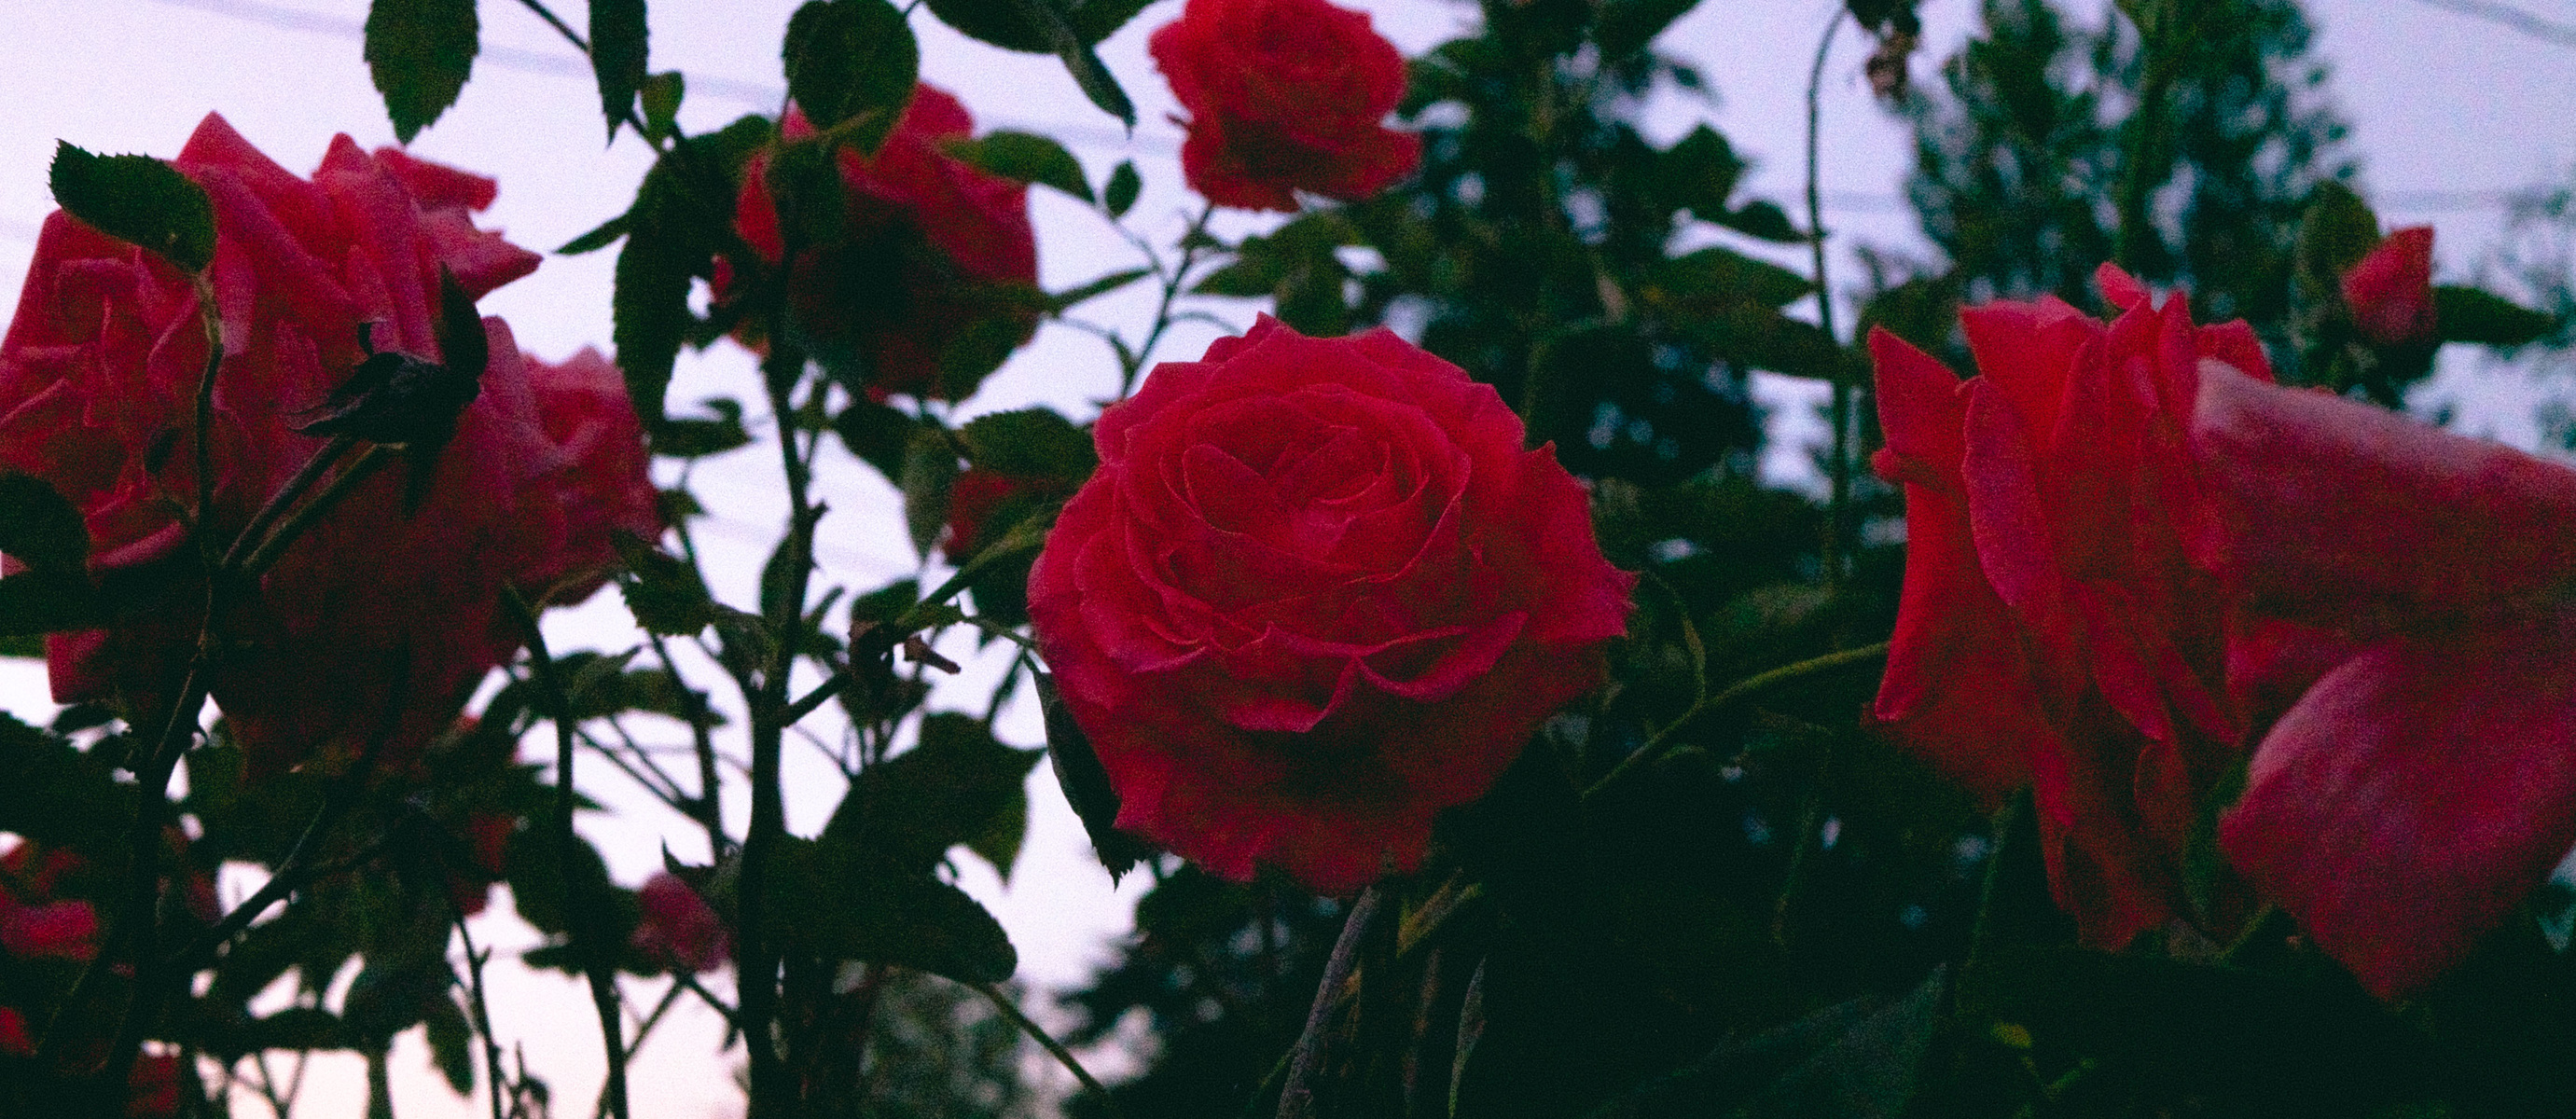 lo-fi roses